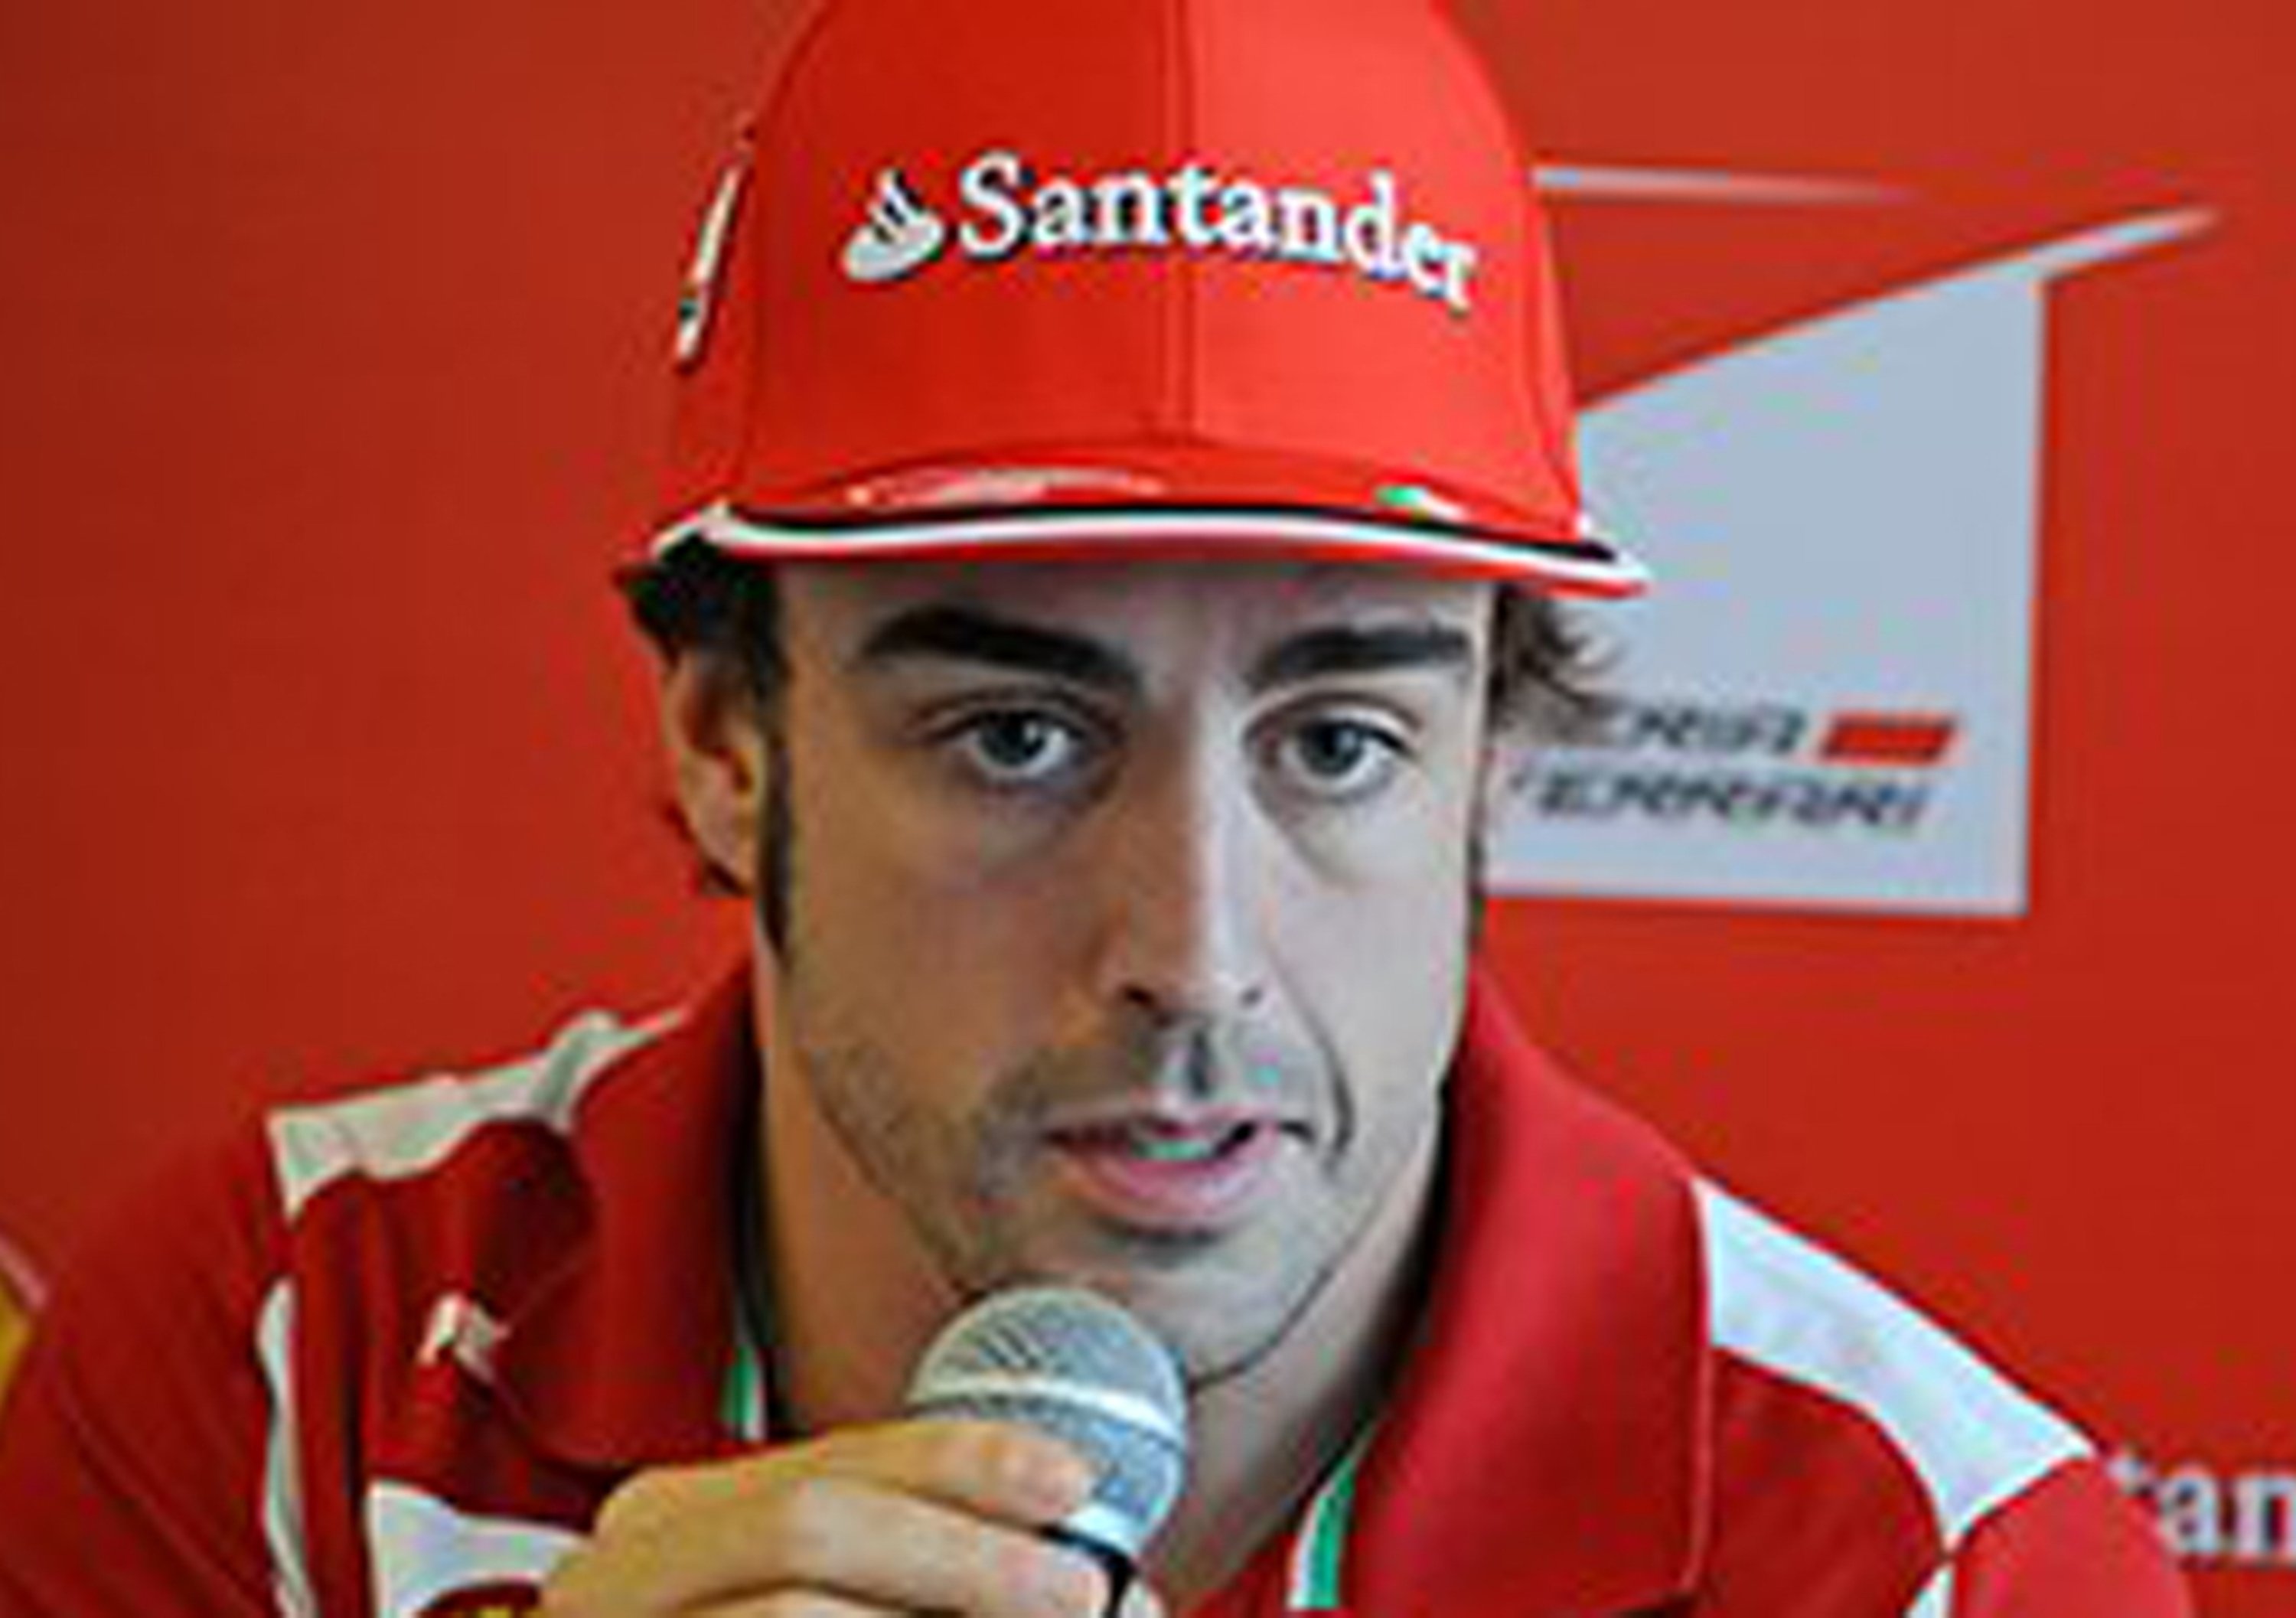 Alonso: &laquo;Non abbiamo ancora la macchina per vincere&raquo;